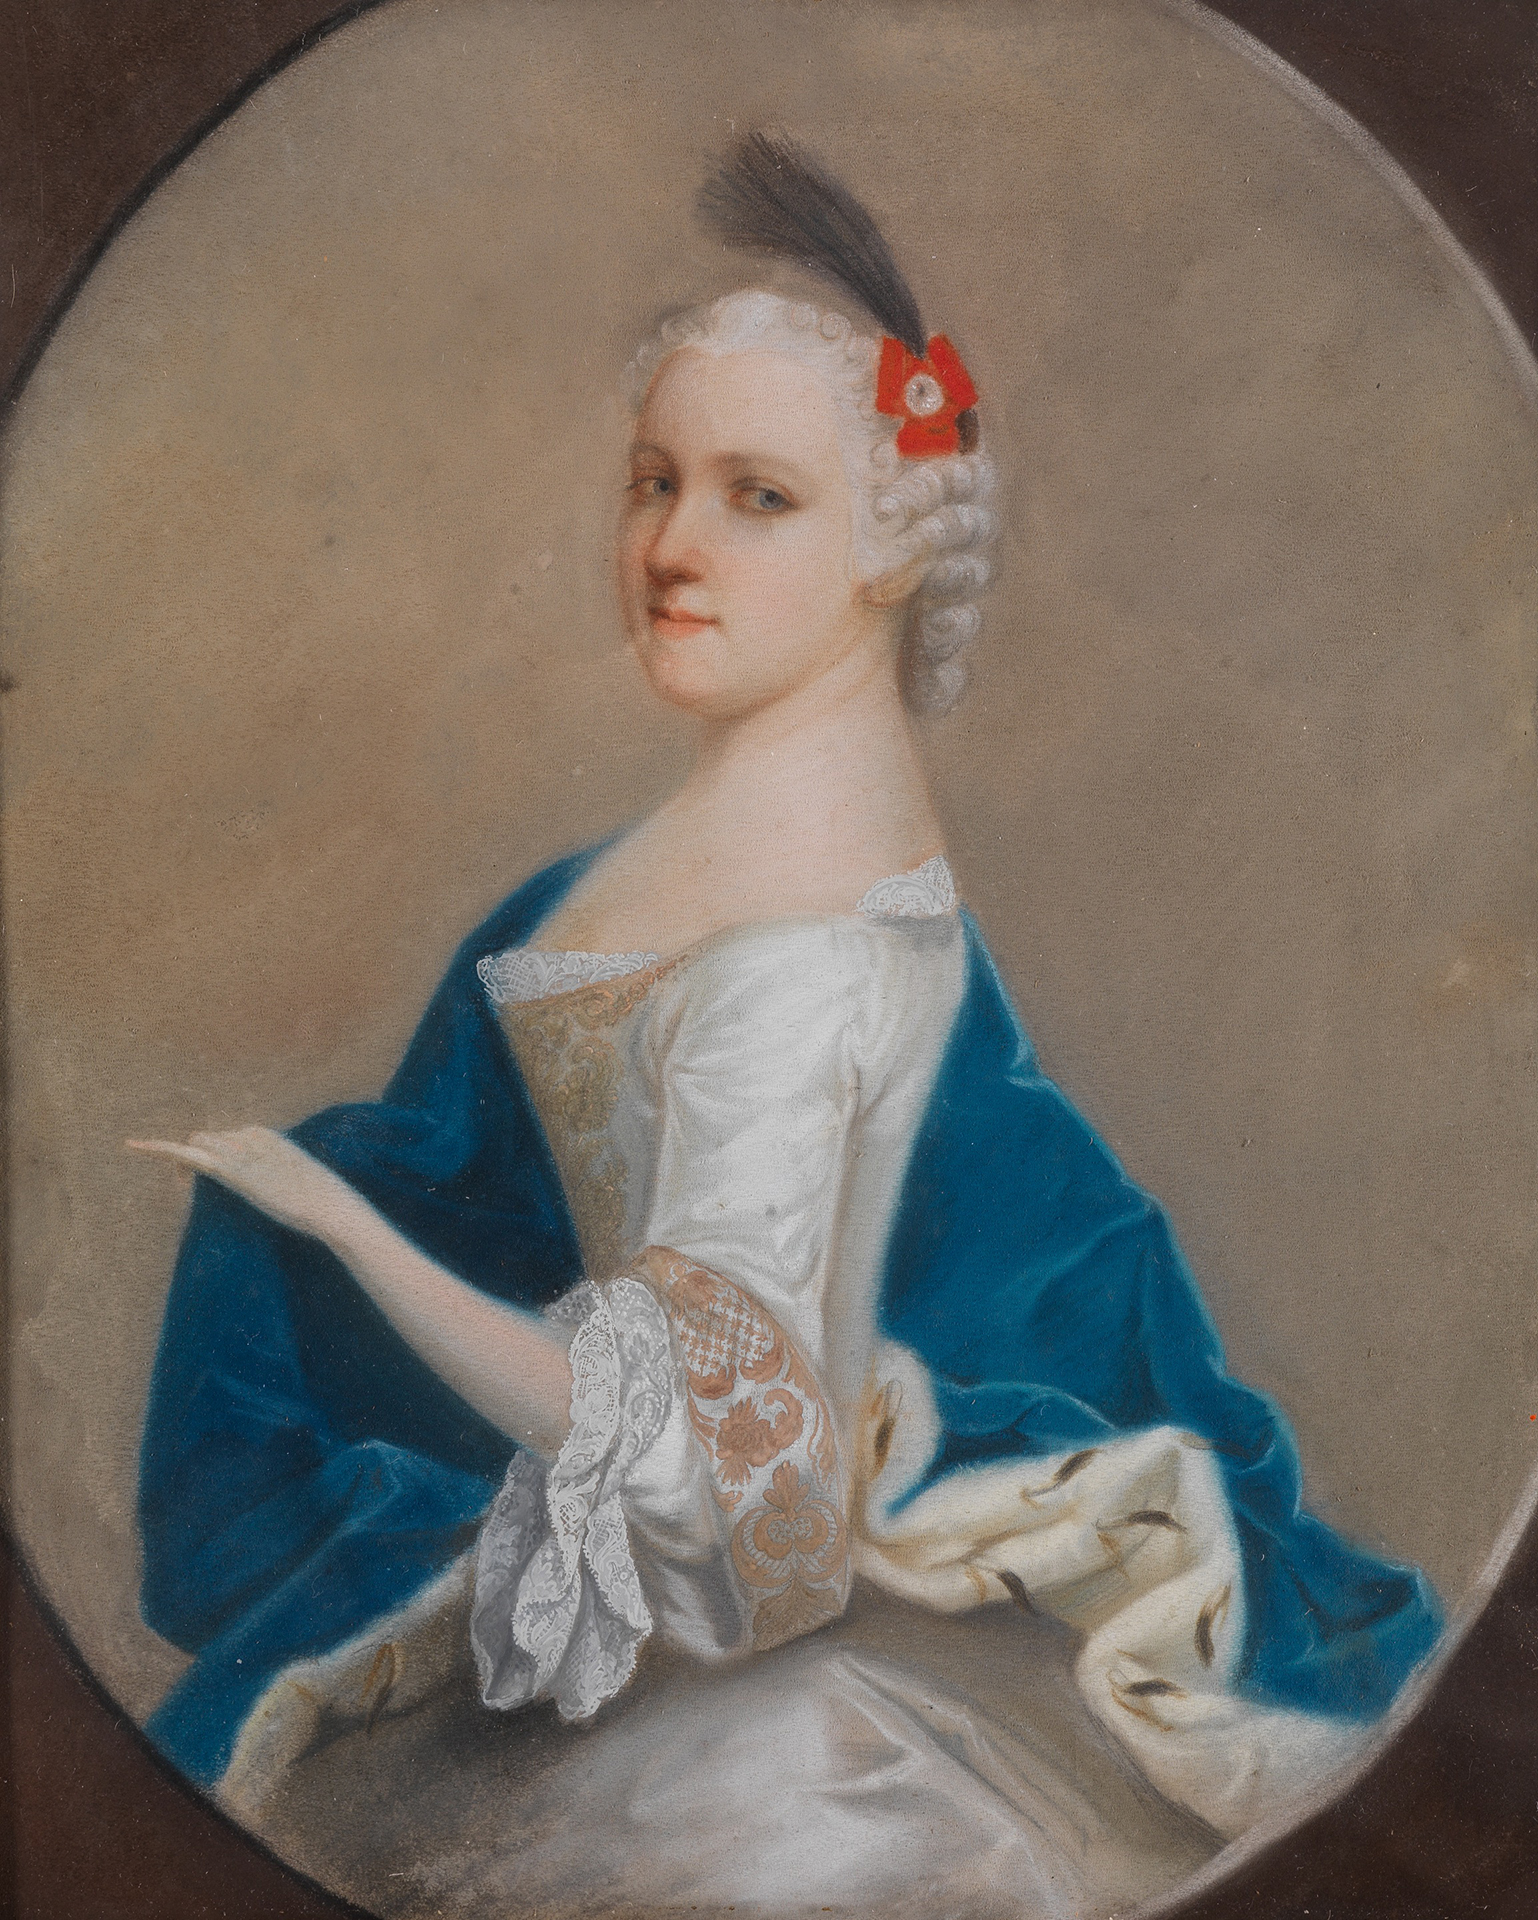 Das Kunstwerk zeigt das Portrait de rjungen Prinzessin Karoline Luise von Hessen-Darmstadt. Sie trägt ein weißes Kleid und einen blauen Mantel.